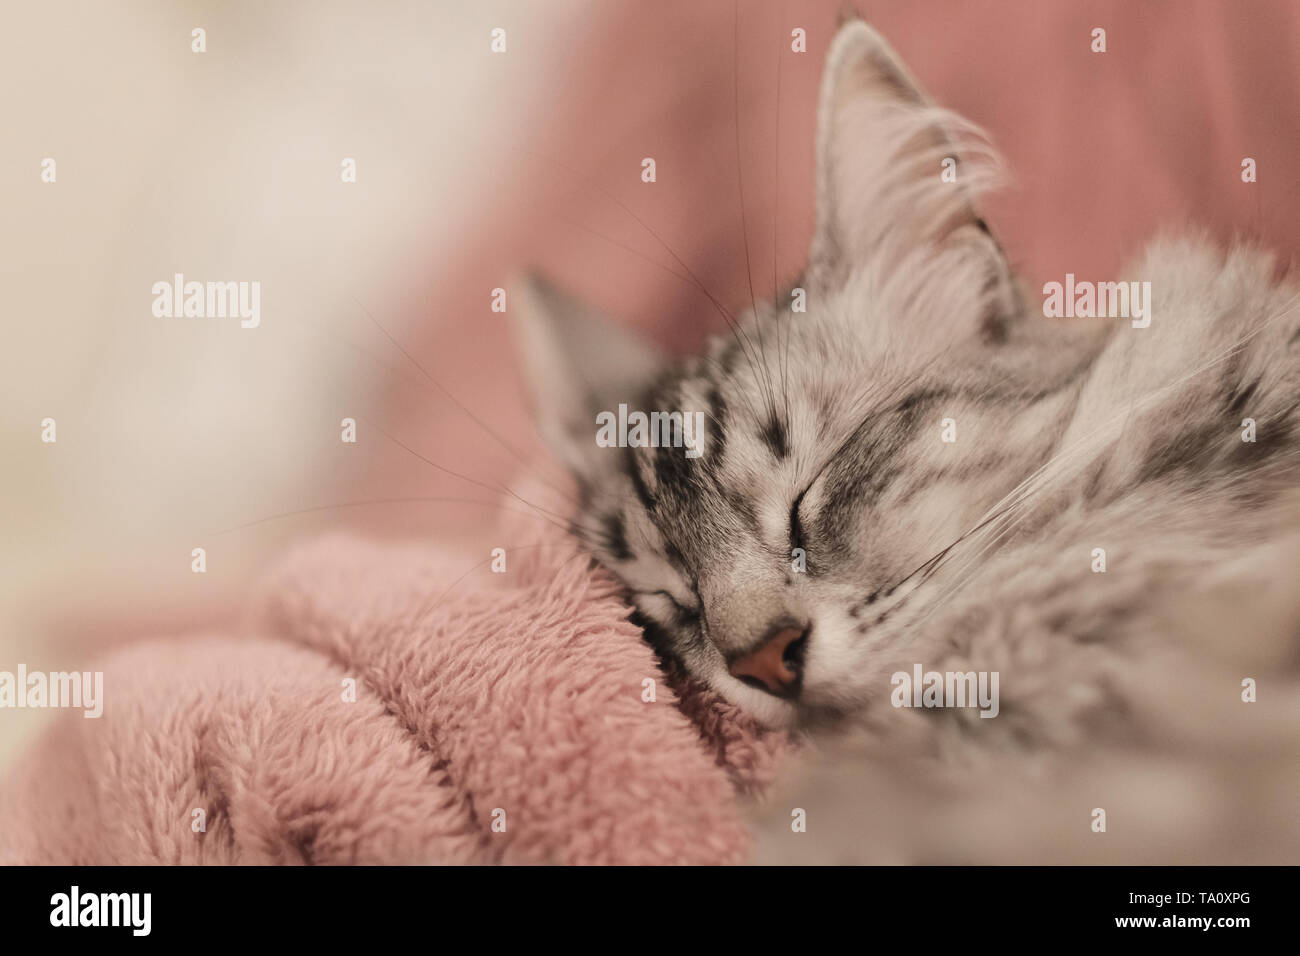 Nahaufnahme der Türkisch Angora Katze schlafen auf eine rosarote Decke  Stockfotografie - Alamy